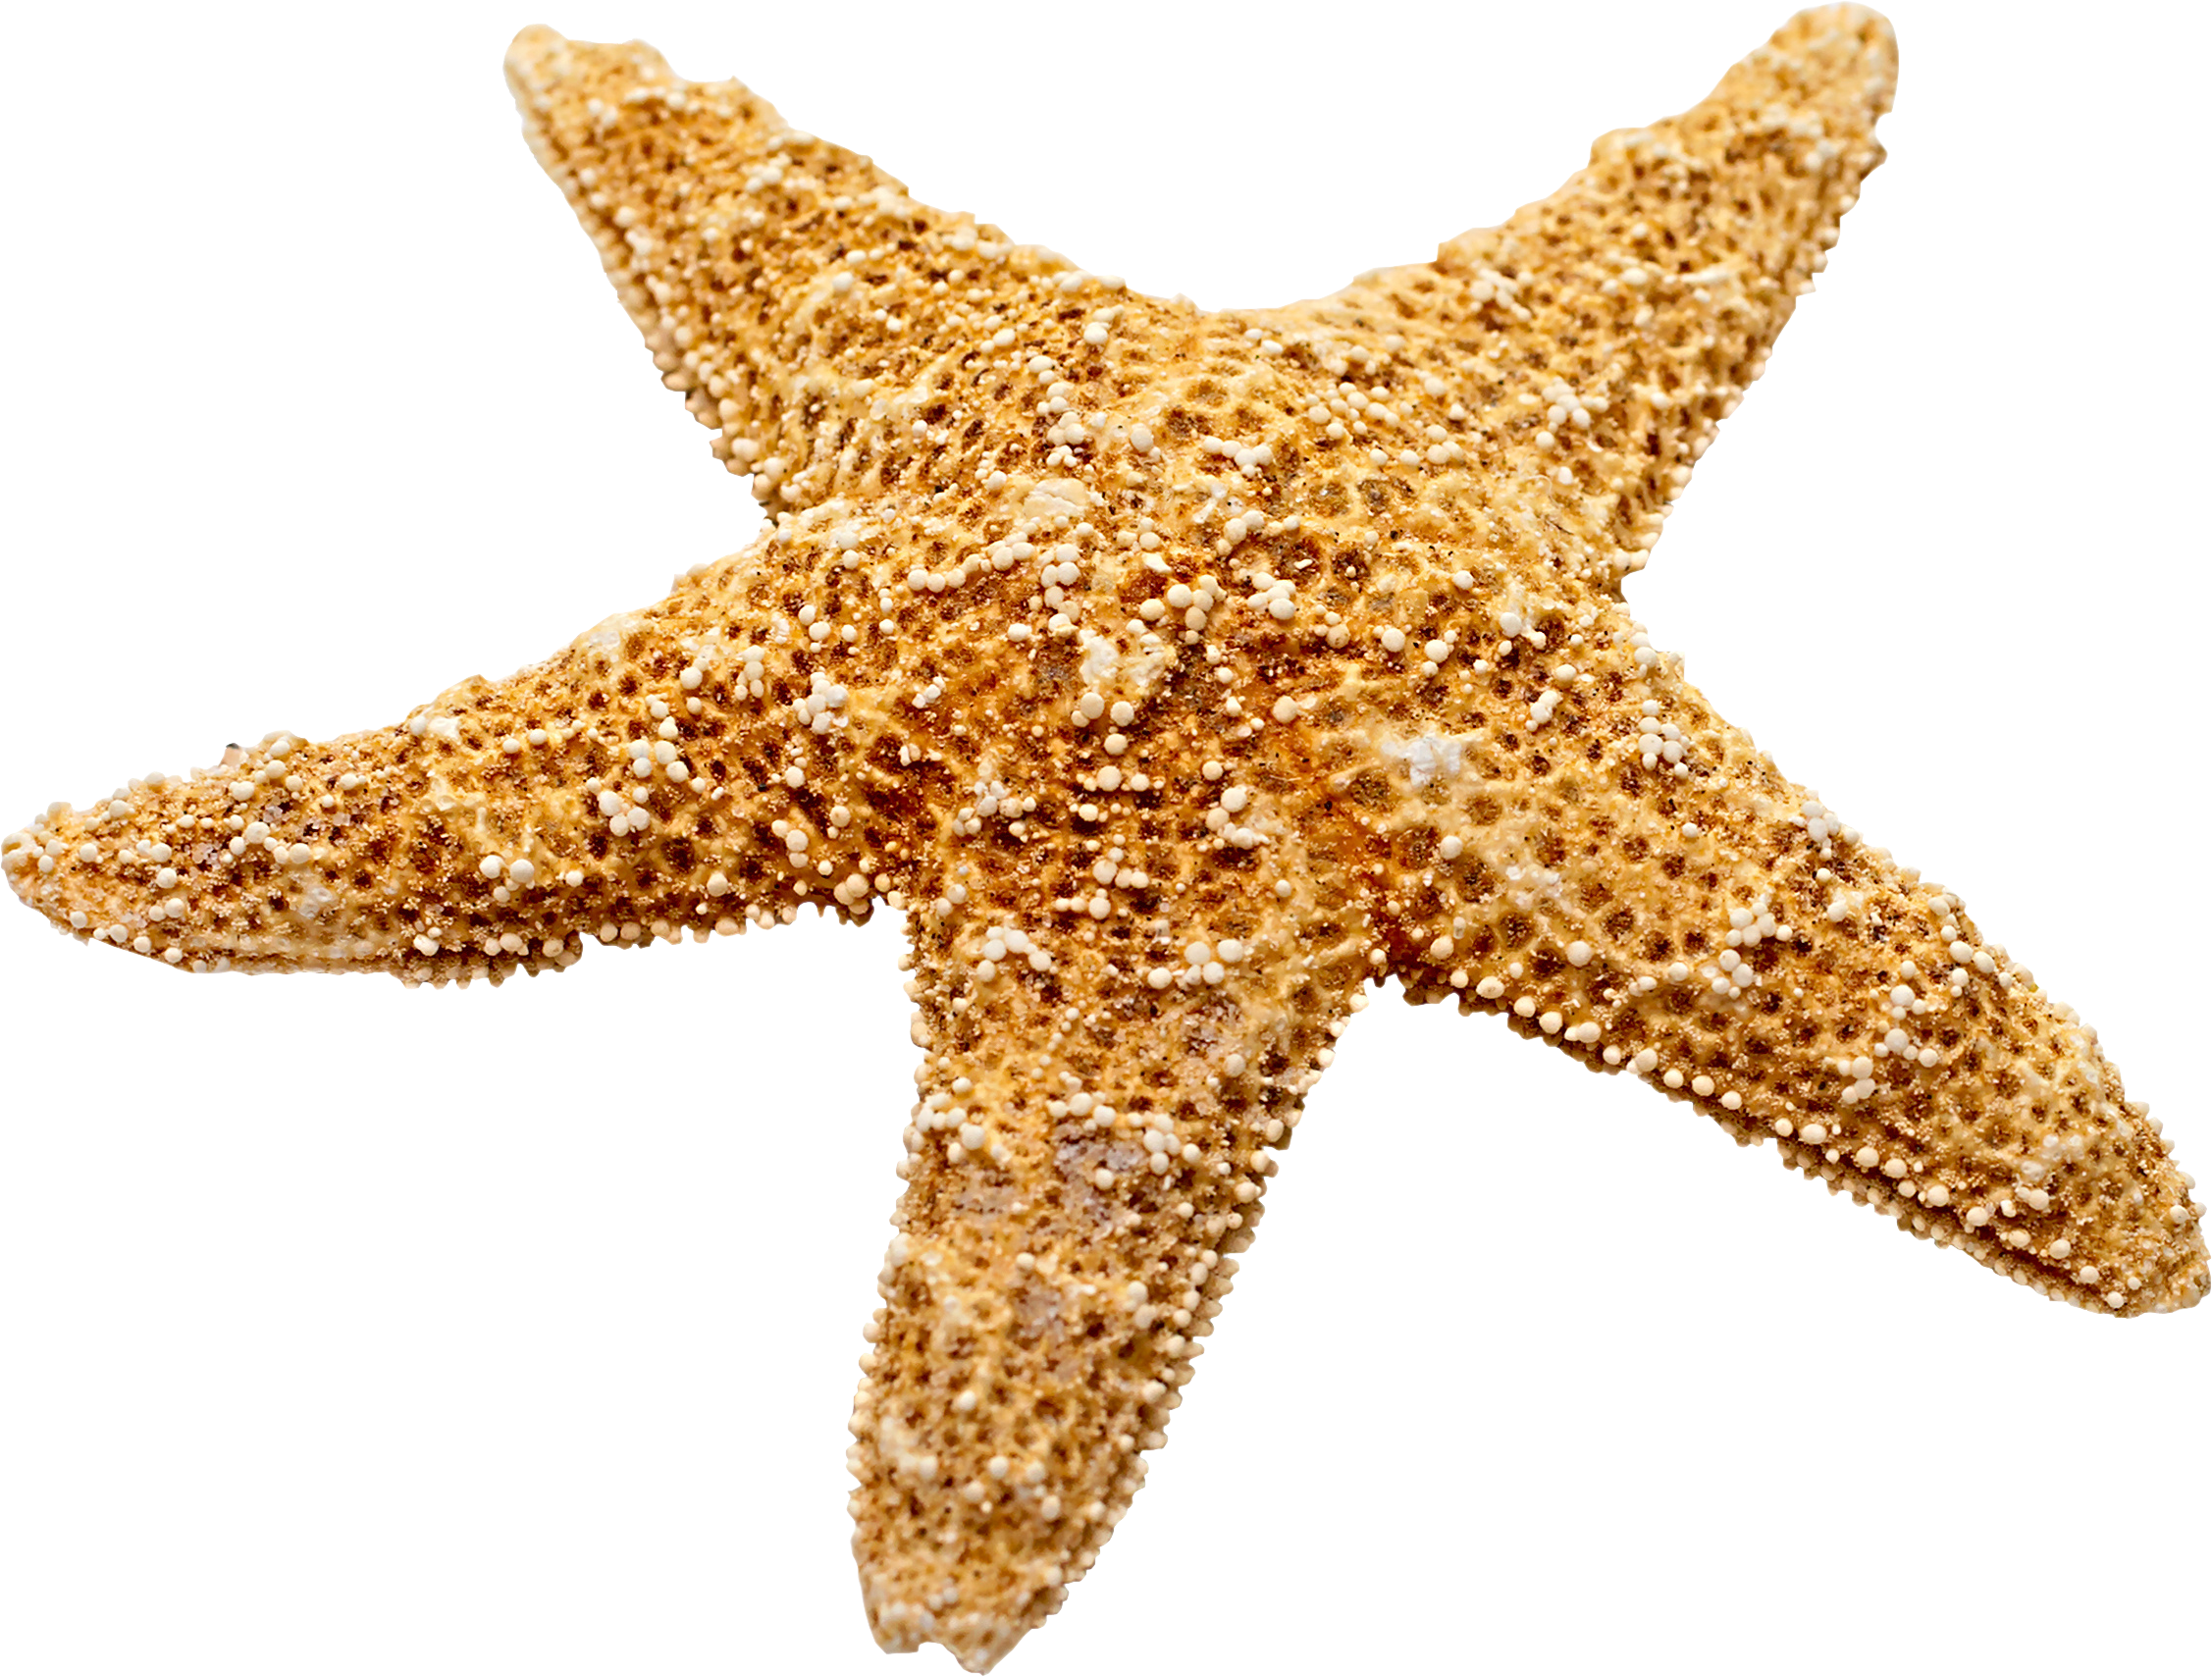 Starfish - Marine decoration Starfish png download - 2254*1708 - Free ...